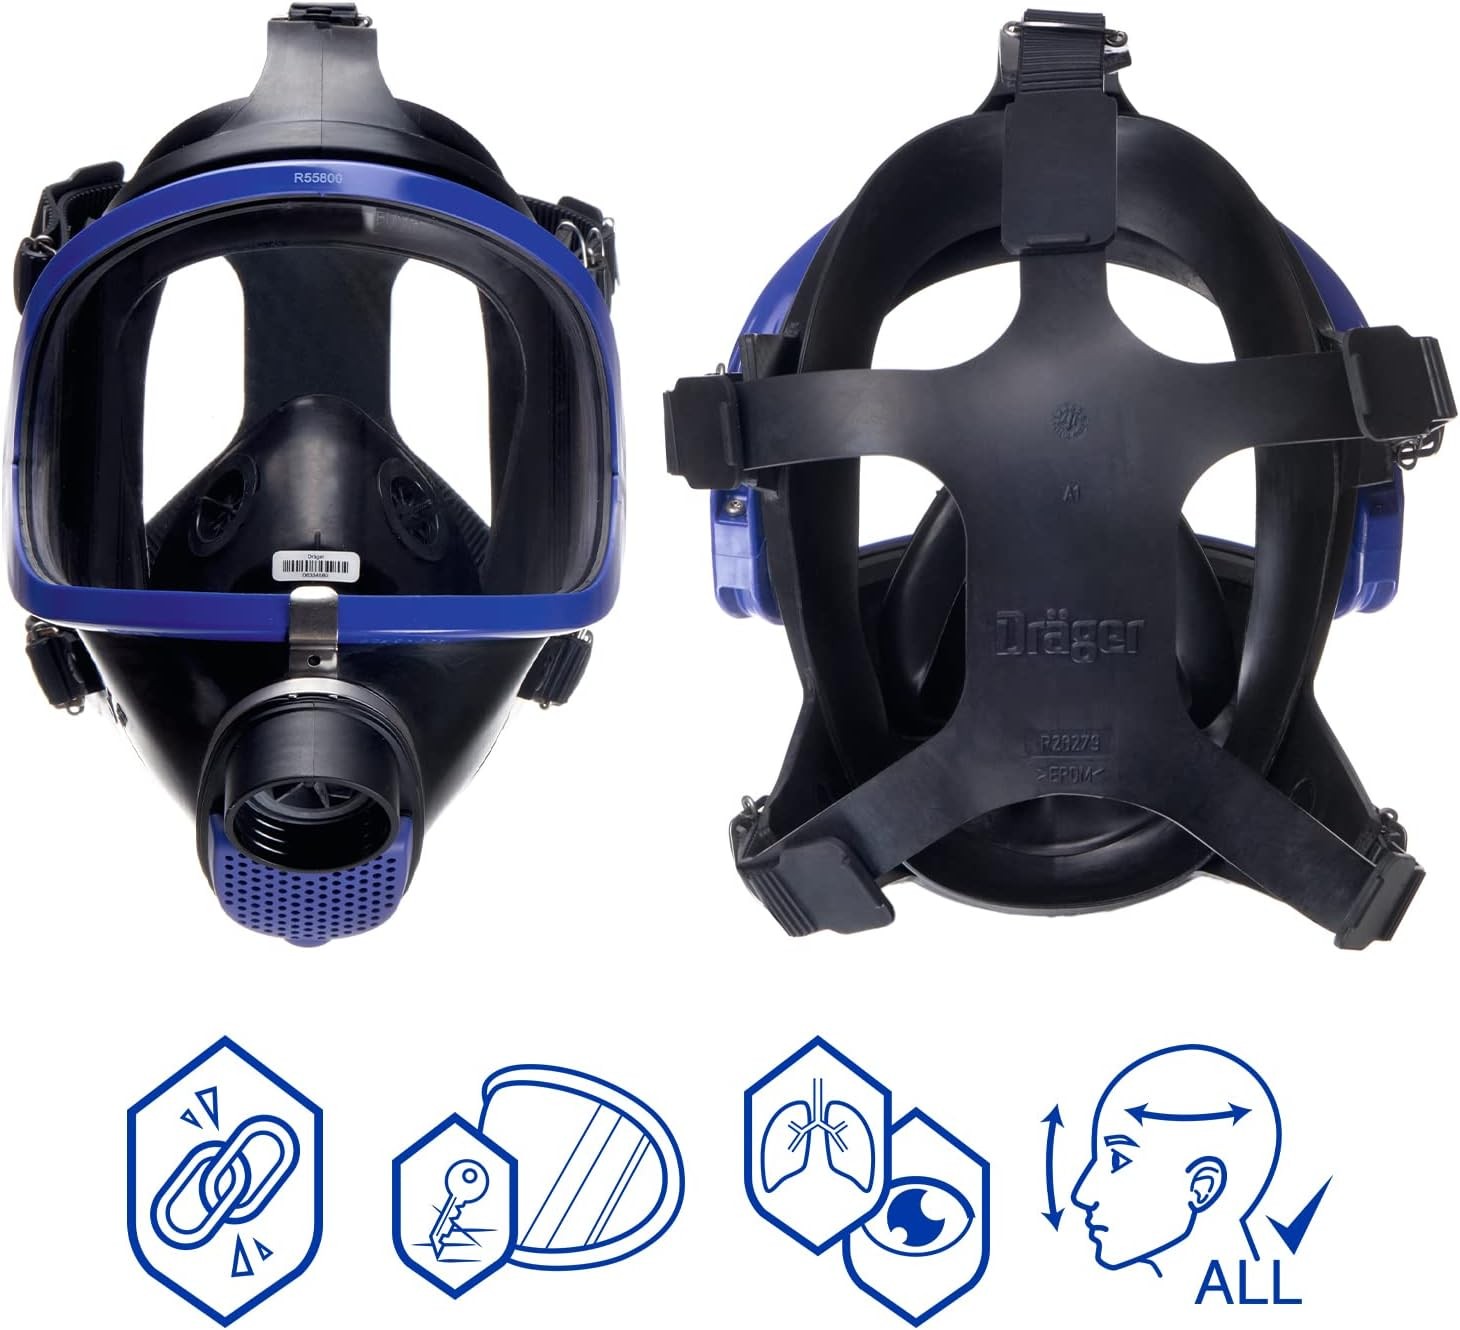 Полнолицевая маска Dräger X-plore 6300 EPDM/PMMA с козырьком из плексигласа, одинарный фильтр